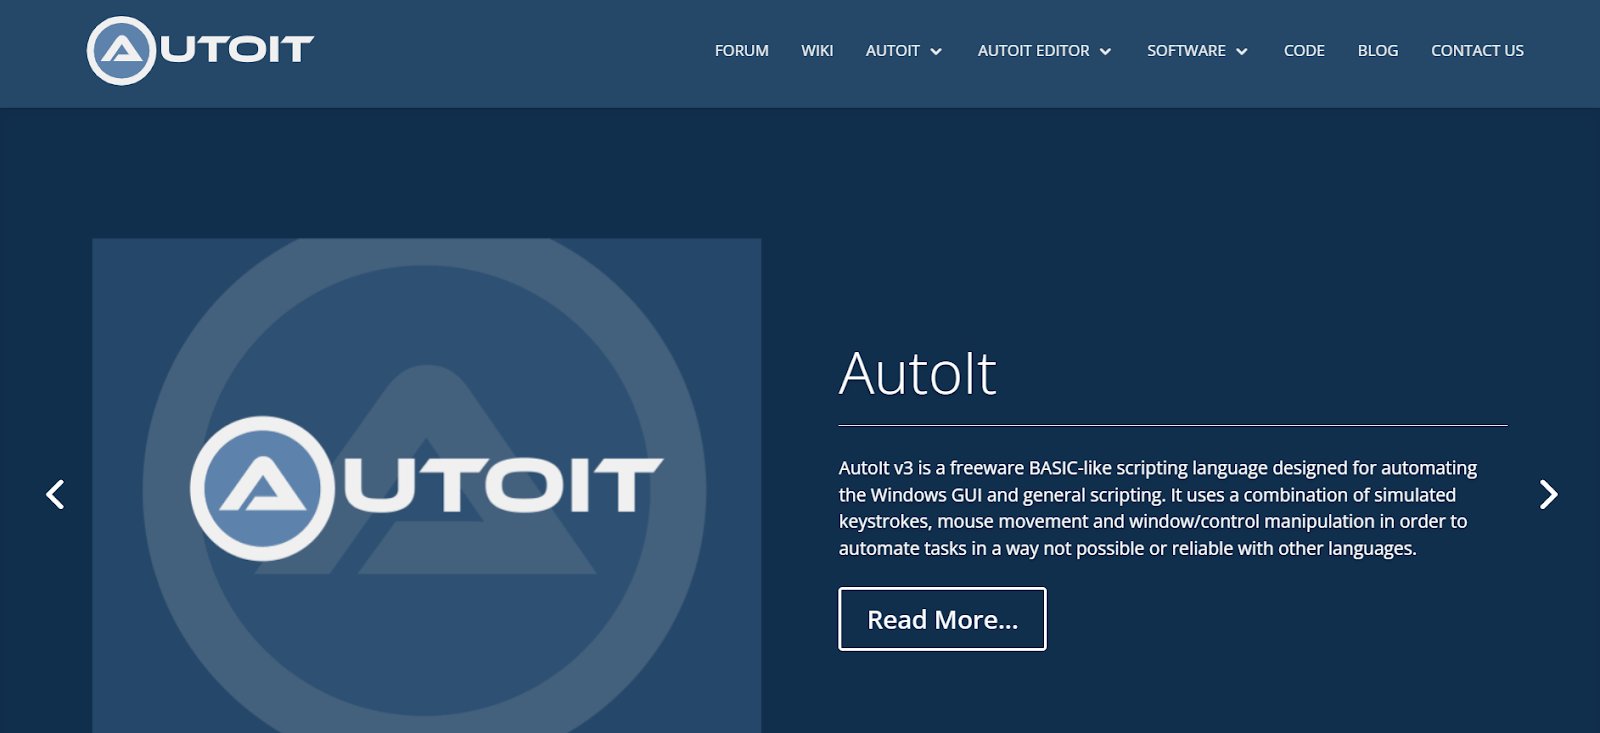 AutoIT desktop automation tool